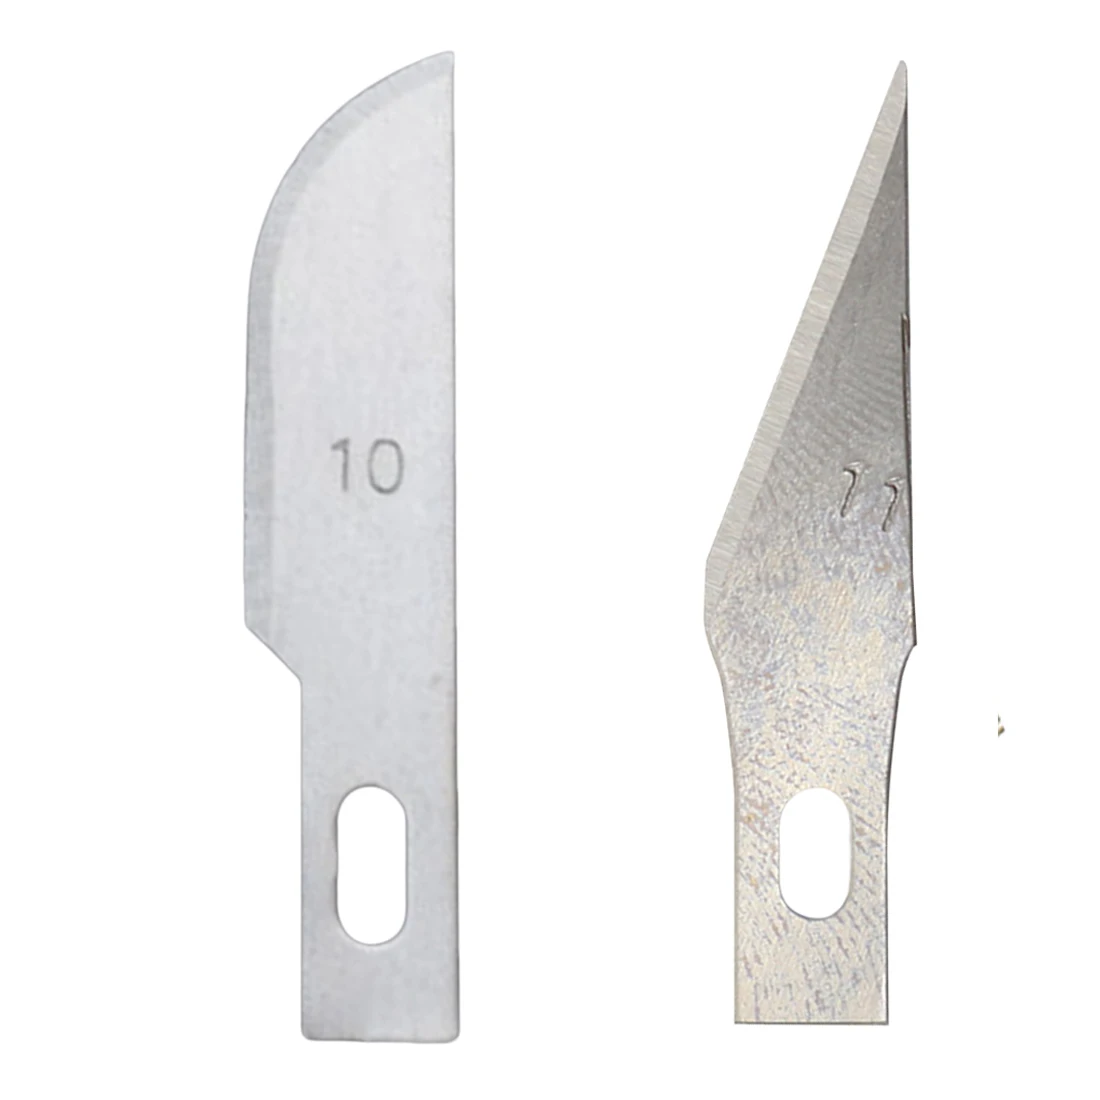 Graver рукоделие хобби нож 11#/10# лезвия из нержавеющей стали для пленки для мобильных телефонов инструменты резак DIY скальпель резьба по дереву 10 шт